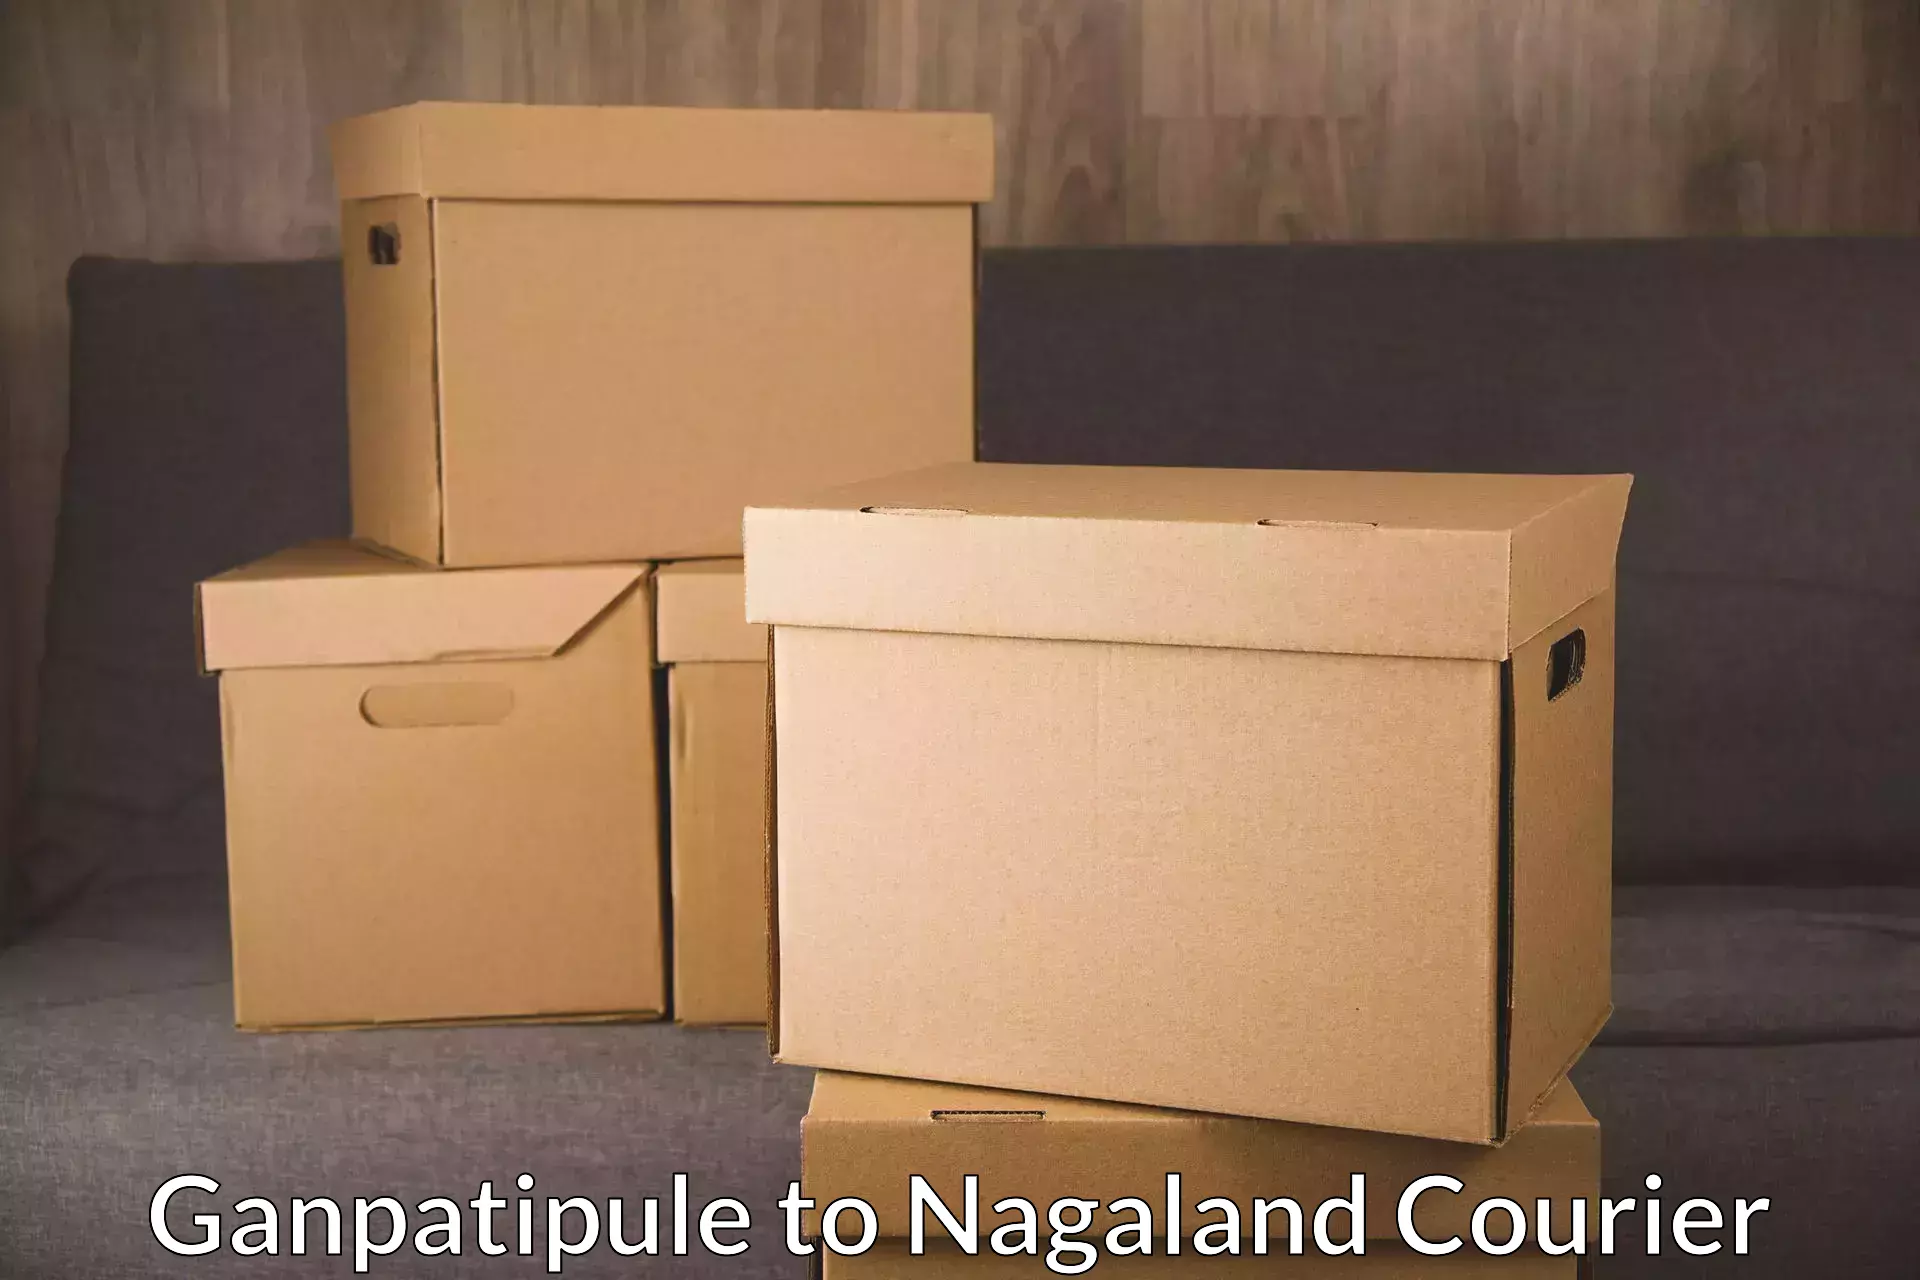 Comprehensive logistics solutions Ganpatipule to Nagaland